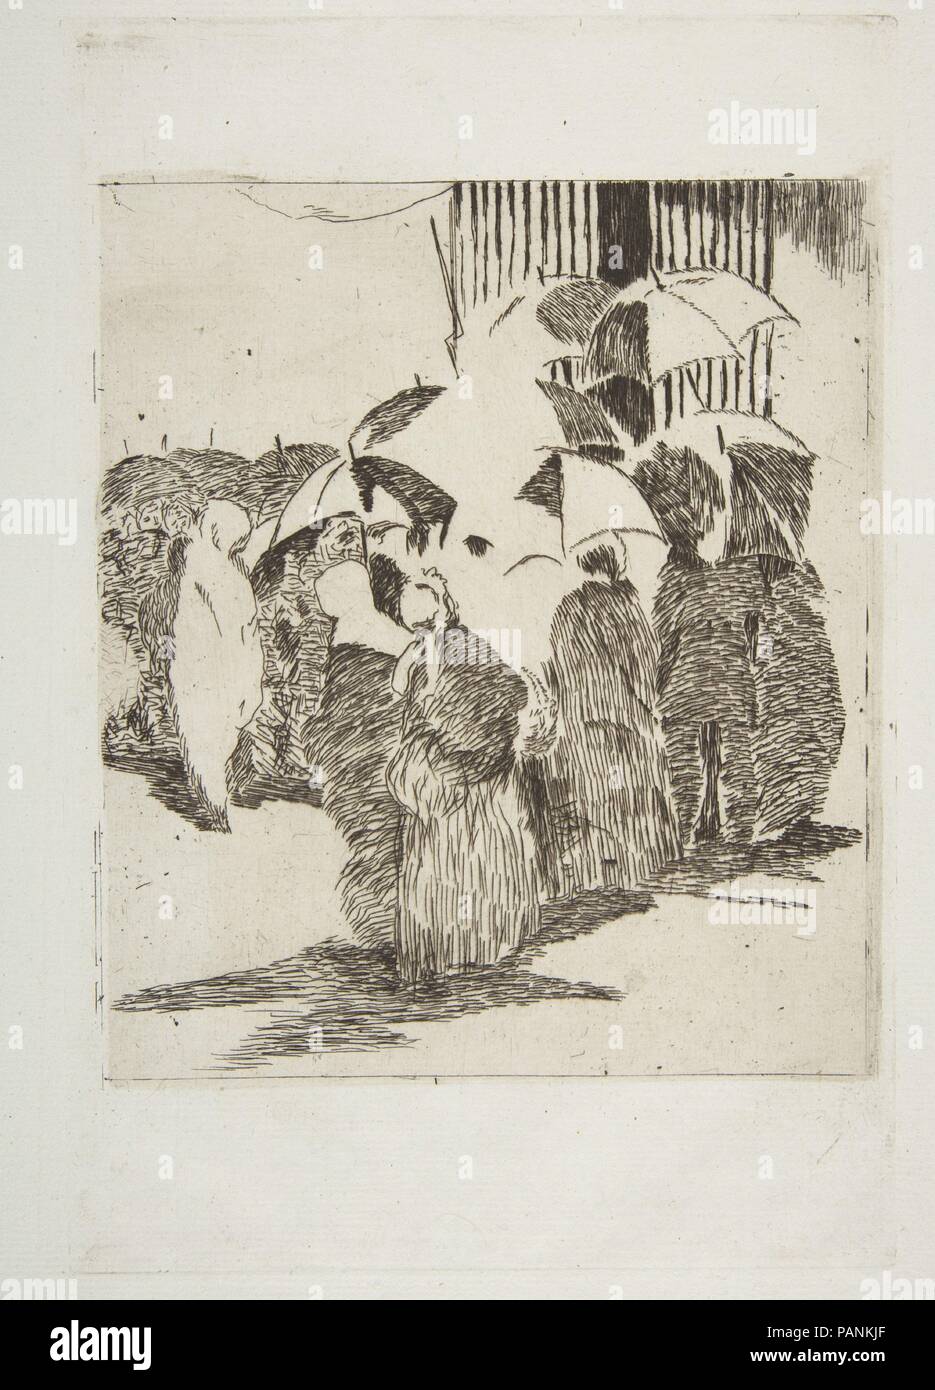 Ligne en face de la boucherie. Artiste : Édouard Manet (français, Paris 1832-1883 Paris). Dimensions : plateau : 9 1/4 x 6 1/8 in. (23,5 x 15,6cm) feuille : 14 1/2 x 9 1/2 in. (36,8 x 24,1 cm). Series/portefeuille : Strölin, édition 1905. Date : 1870-71. Musée : Metropolitan Museum of Art, New York, USA. Banque D'Images